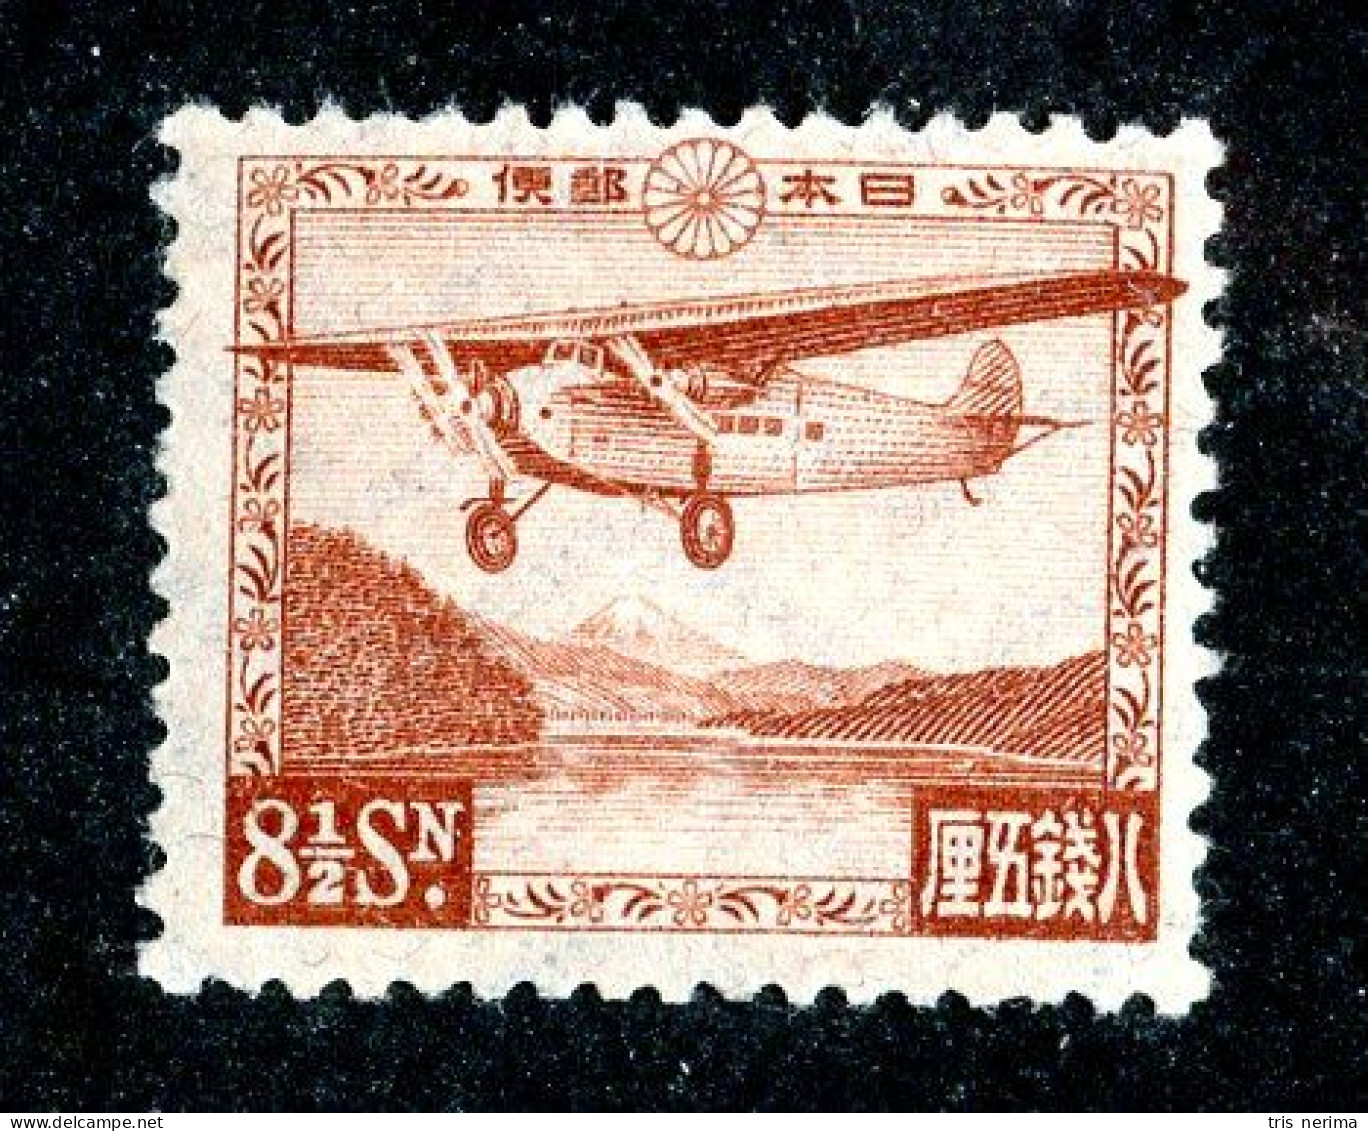 1300 Wx Japan 1929 Scott # C3 MVLH* Cat.$45. (offers Welcome) - Poste Aérienne